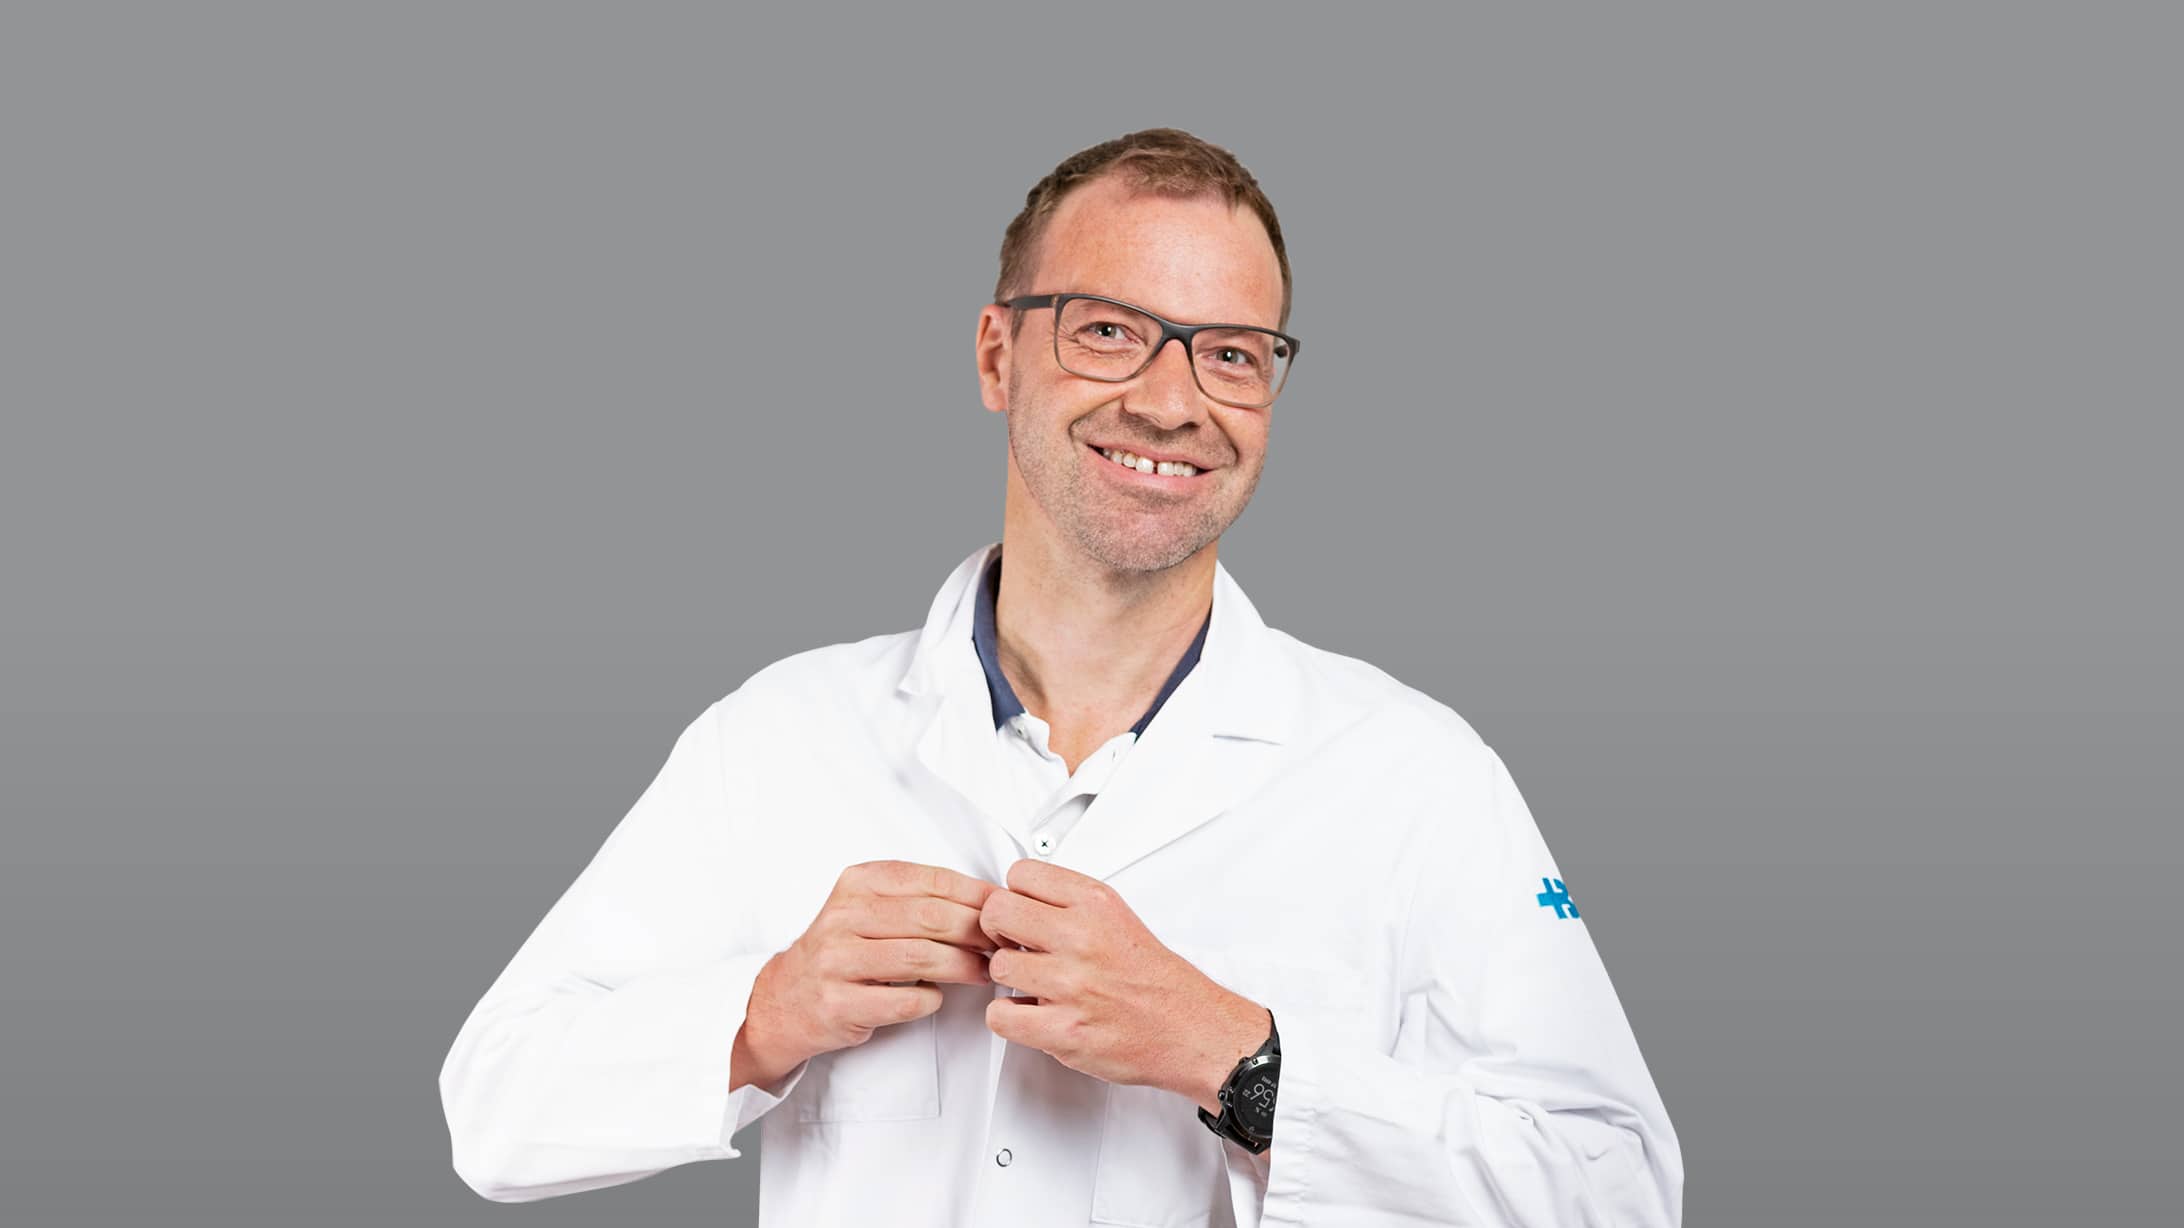 Portrait von Matthias Froh, Chefarzt Gastroenterologie am KSB, auf dunkelgrauem Hintergrund